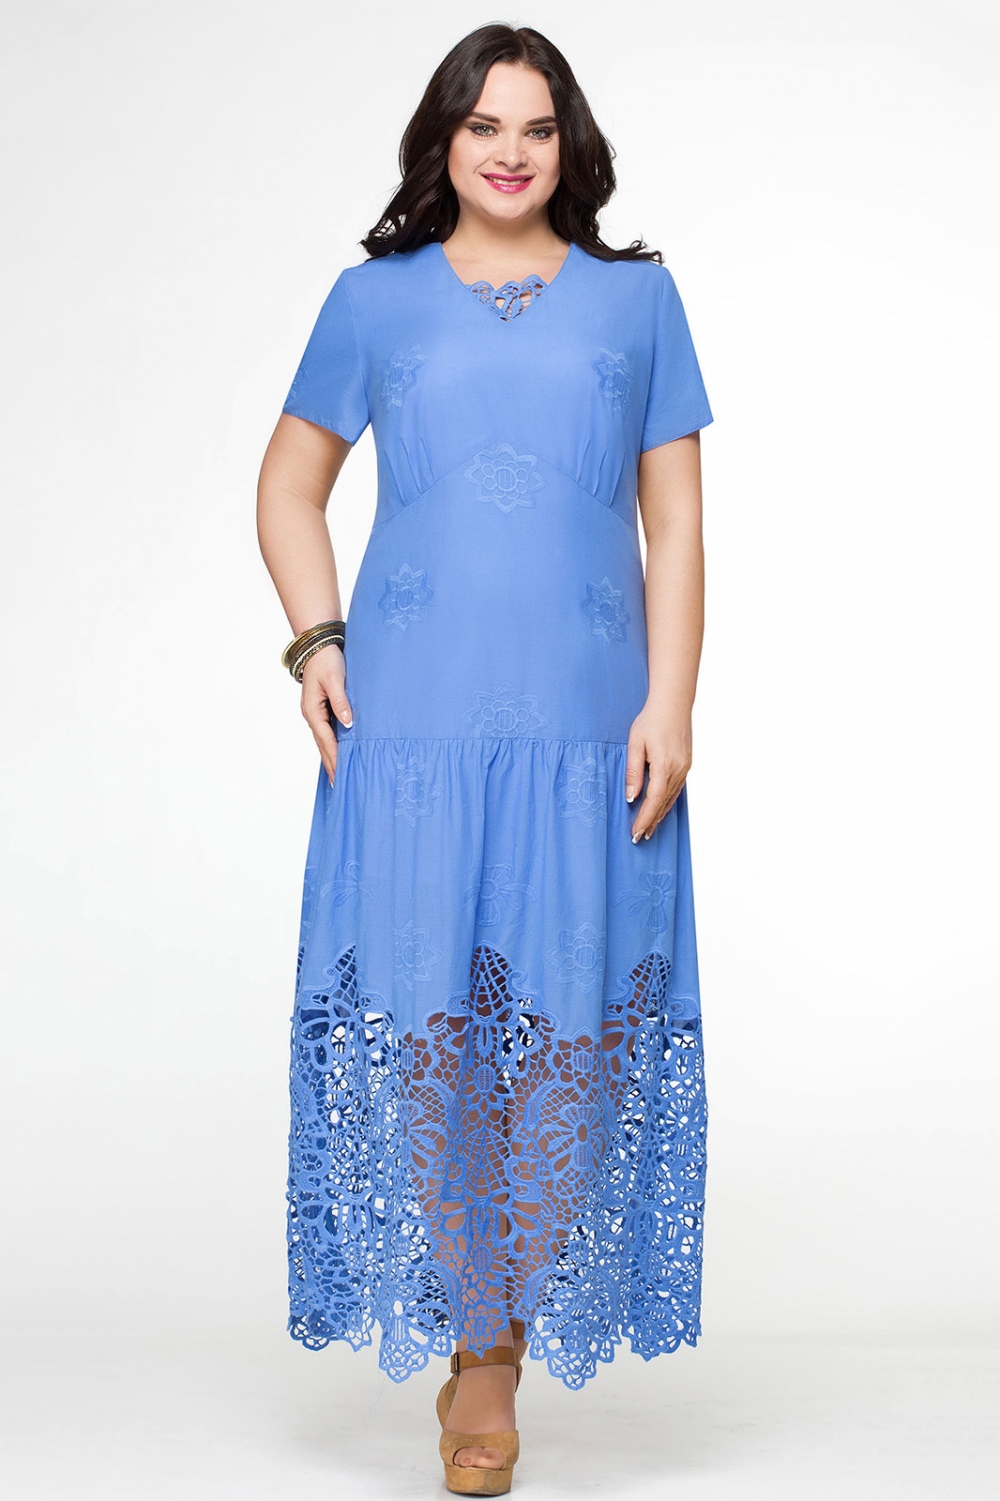 Аира стиль. Платье Aira Style. Валберис турецкие платья. Женские платья больших размеров. Летнее платье большого размера.